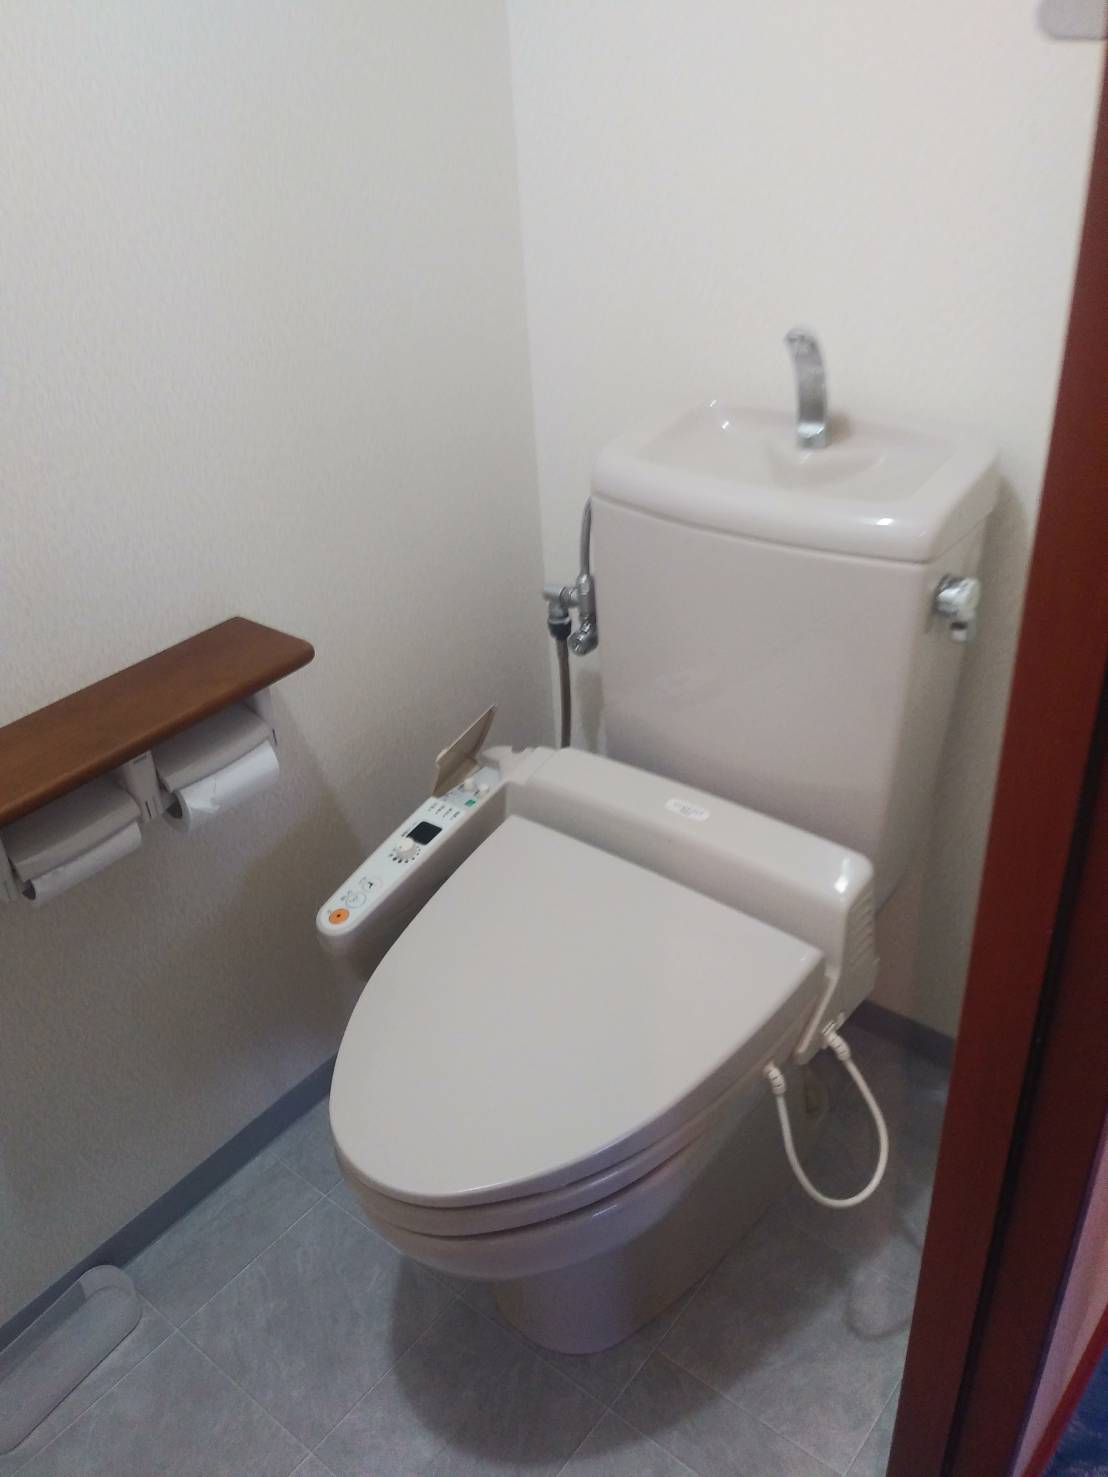 トイレのよくある故障10選と、修理方法について水道屋が解説！ 名古屋の水漏れ修理なら中部水道修理株式会社